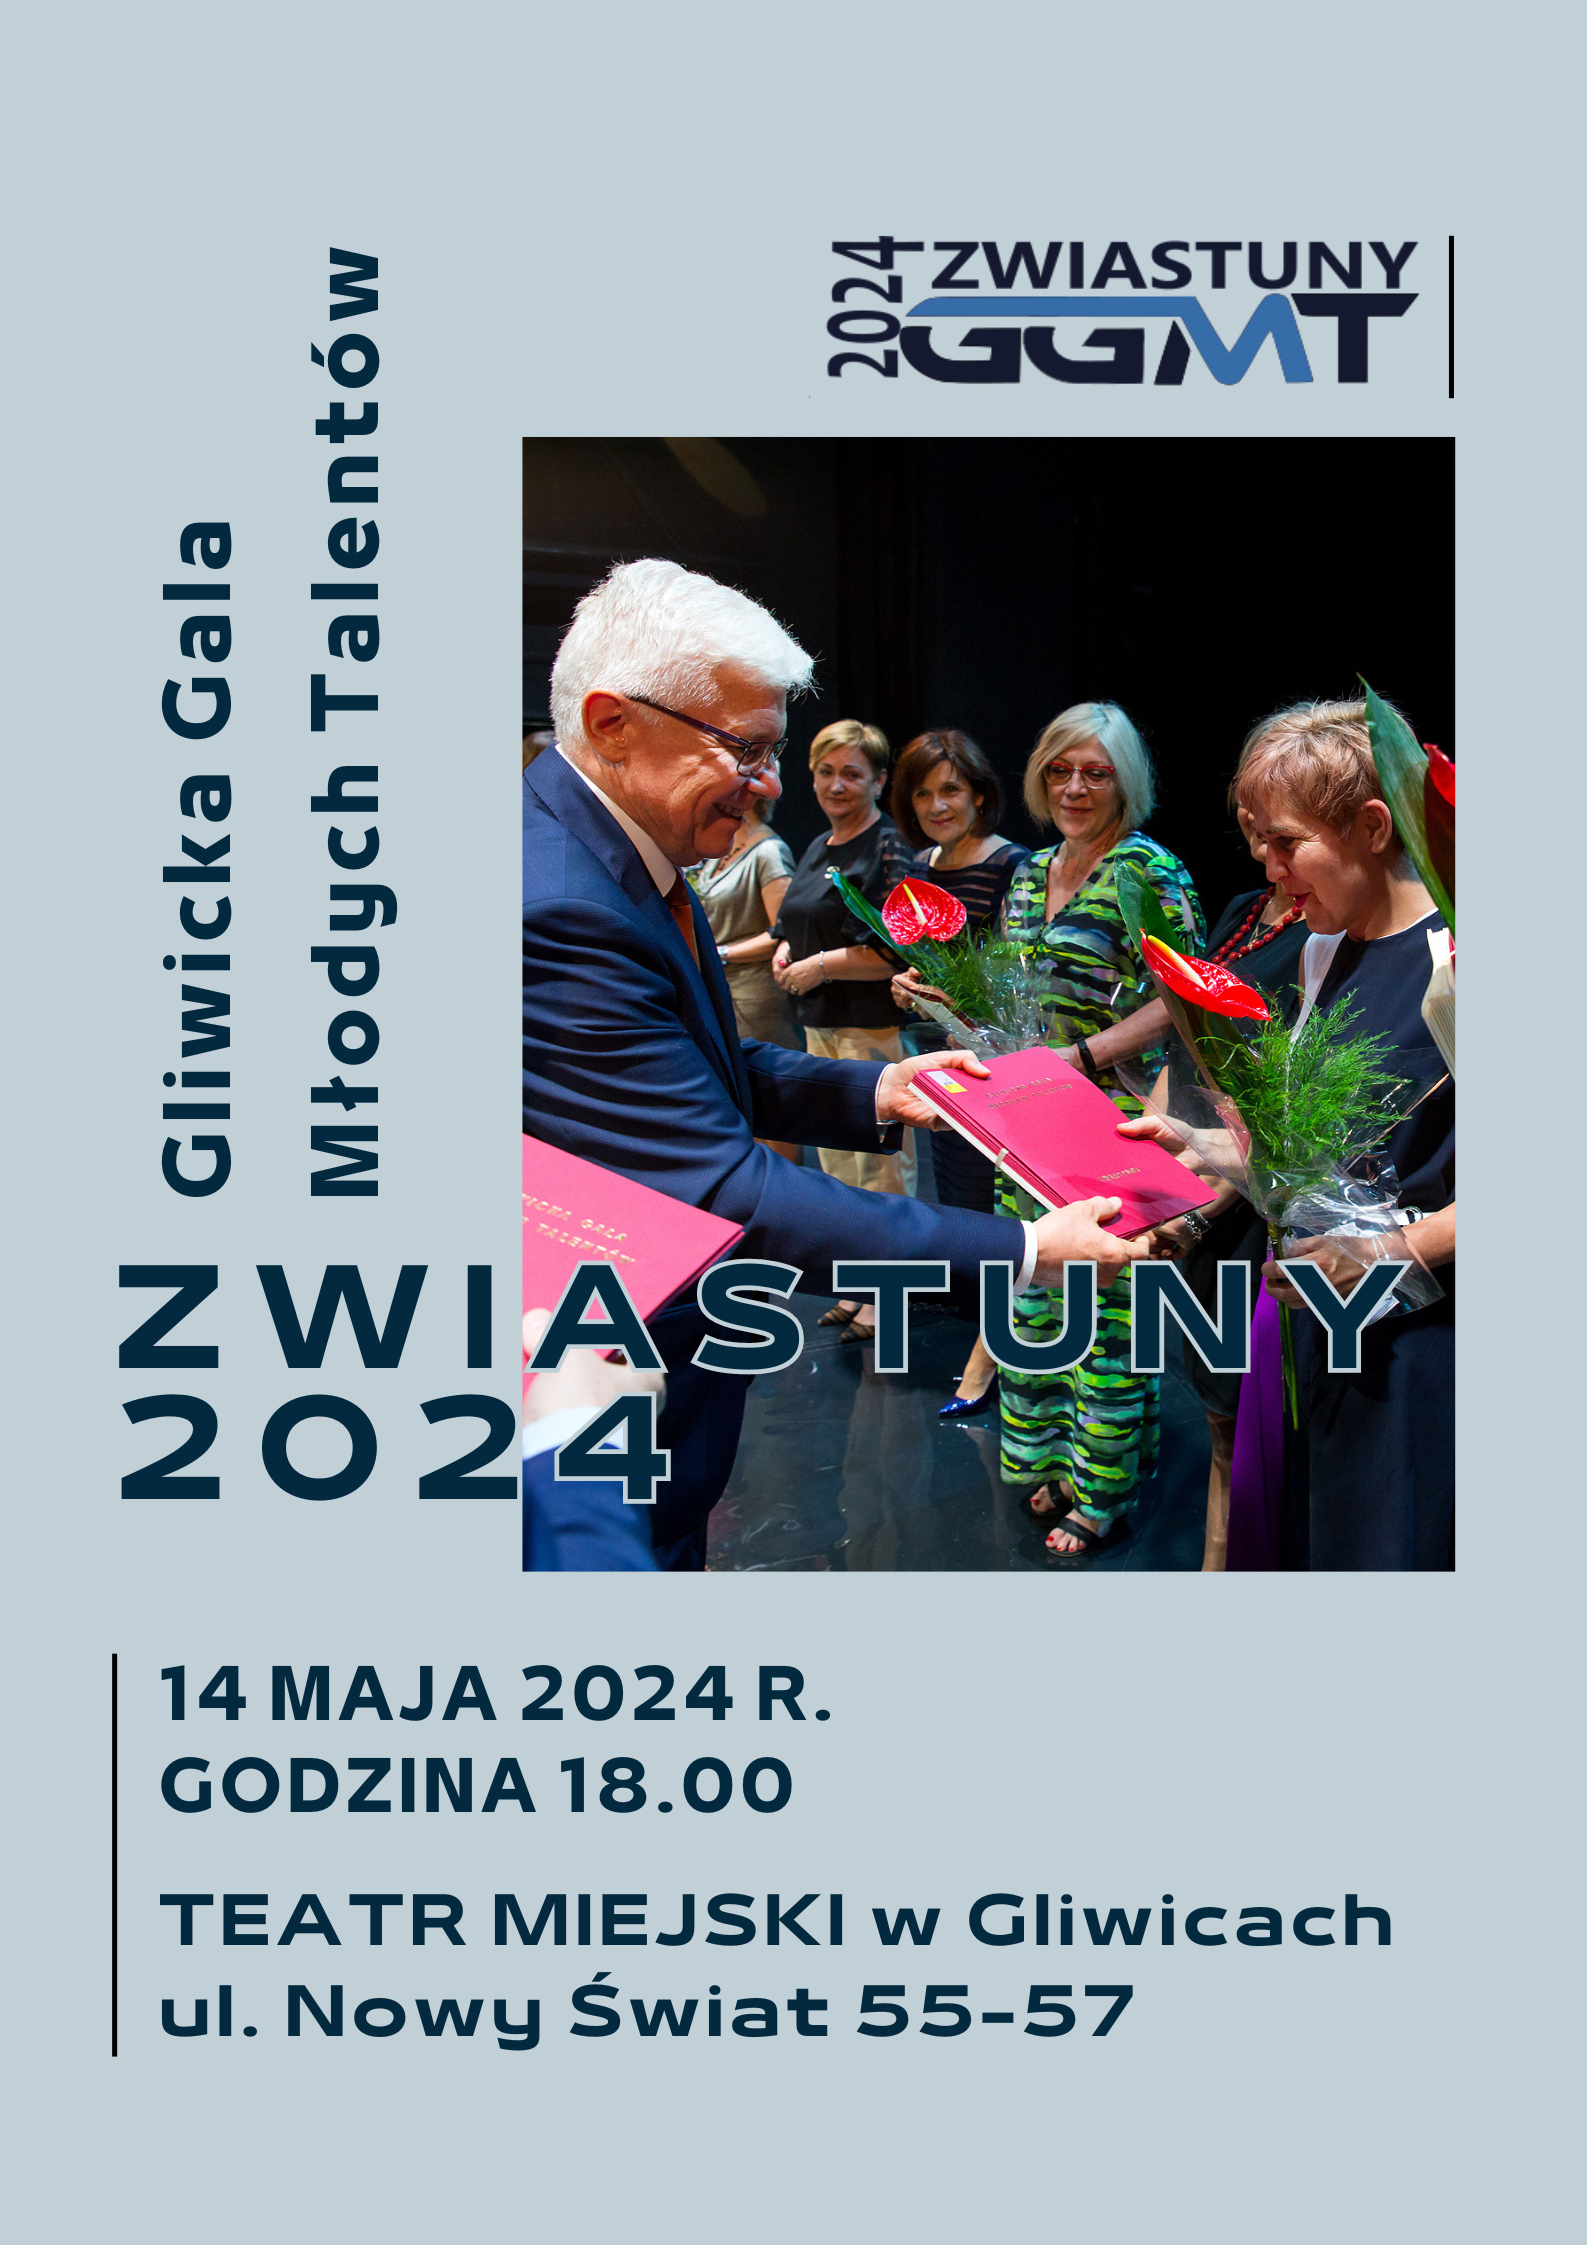 GGMT ZWIASTUNY 2024 - XVIII Gliwicka Gala Młodych Talentów